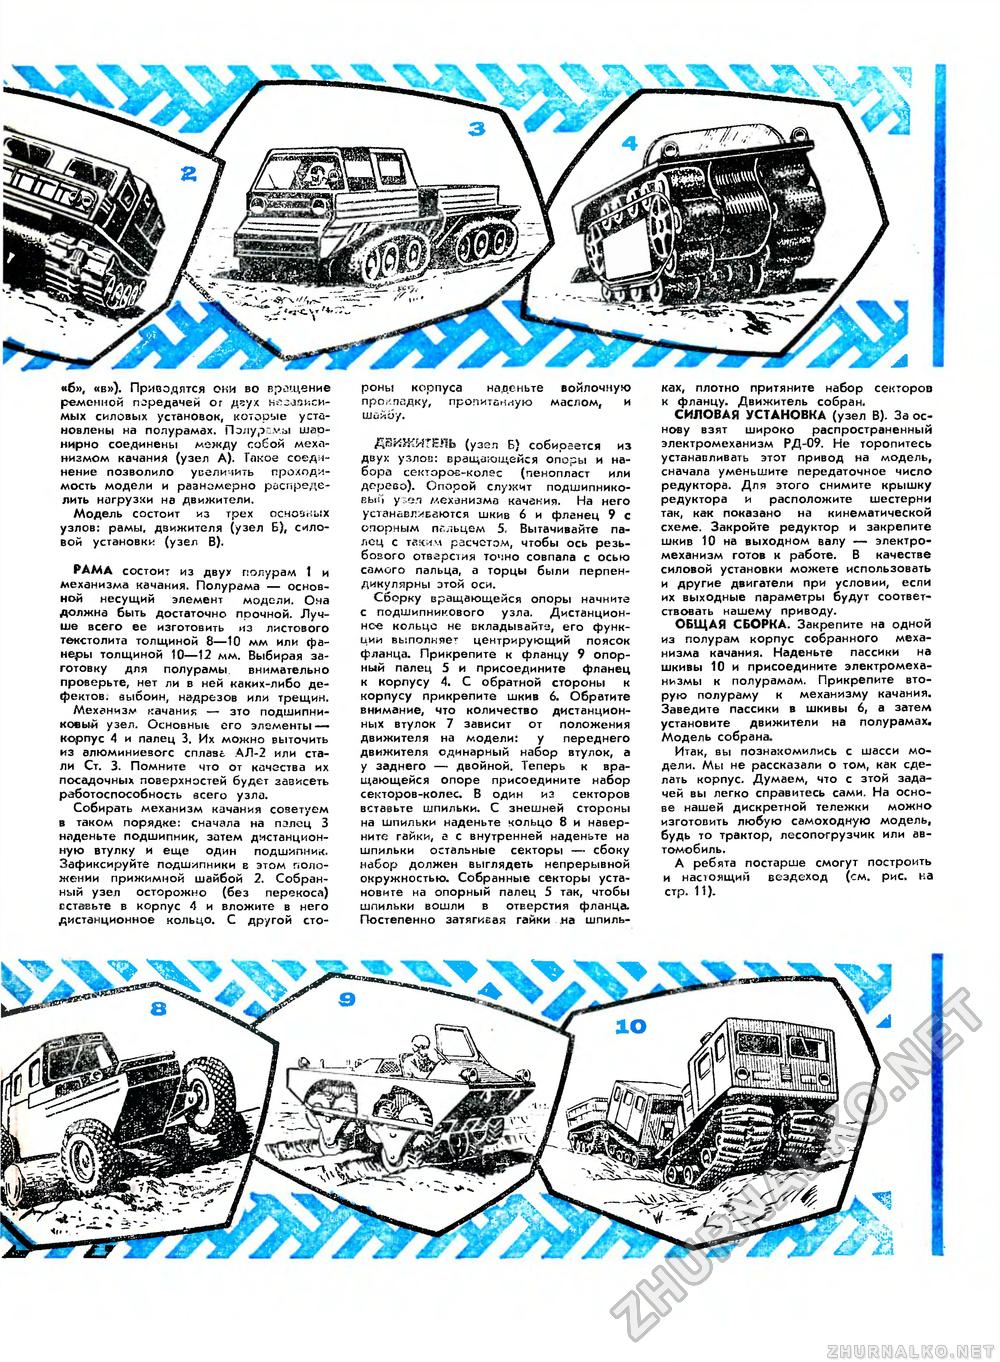 Юный техник - для умелых рук 1977-04, страница 9